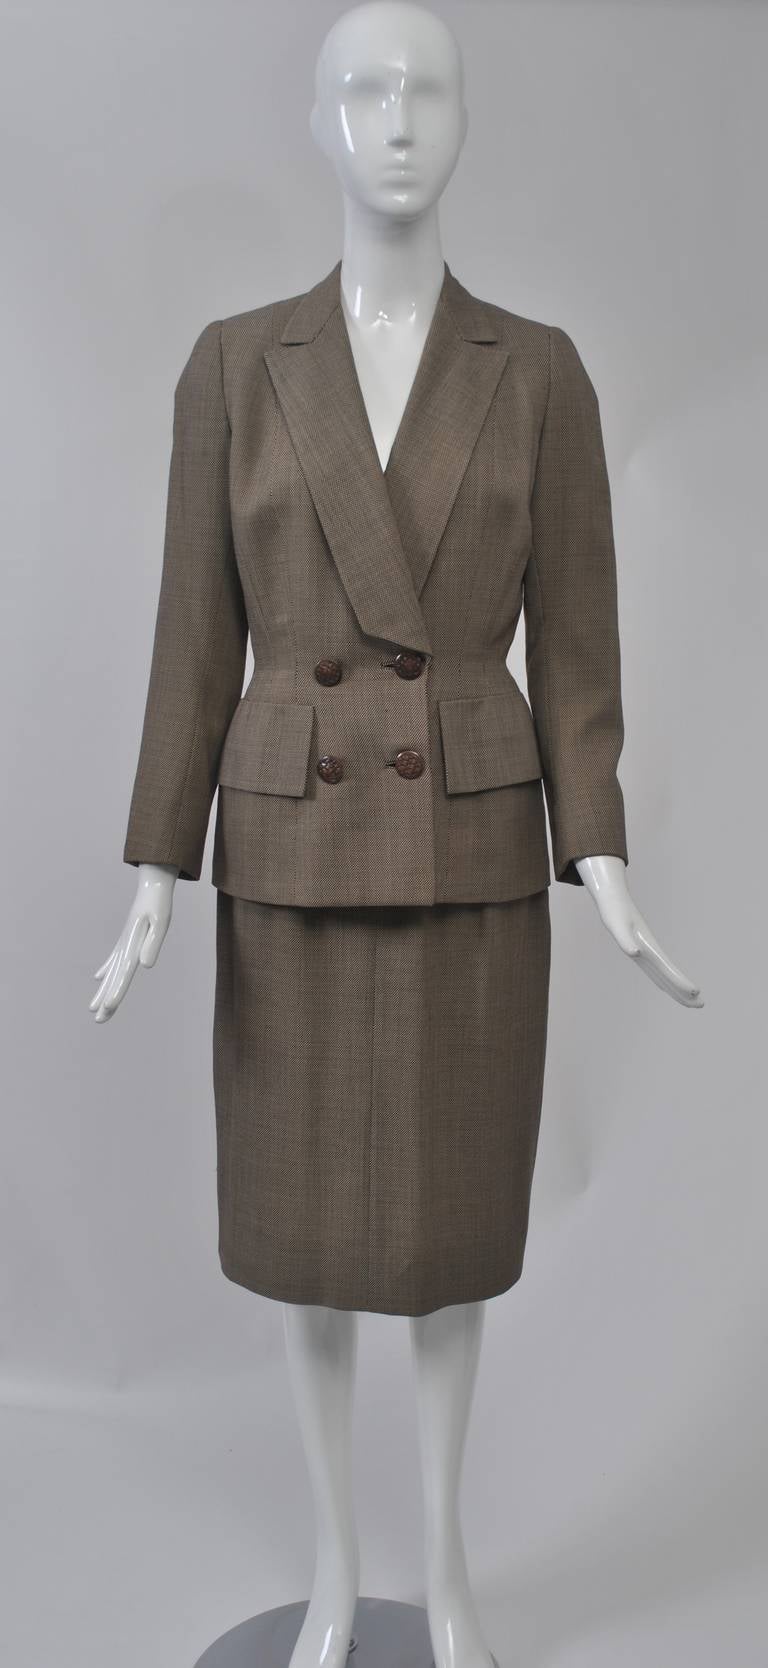 Dieser Anzug aus feiner brauner und weißer Tweedwolle aus den 1950er Jahren zeichnet sich durch ein makelloses Design aus. Die lange Jacke im Blazer-Stil hat einen gekerbten Schalkragen, der unten schräg geschnitten ist, große Taschenklappen an der